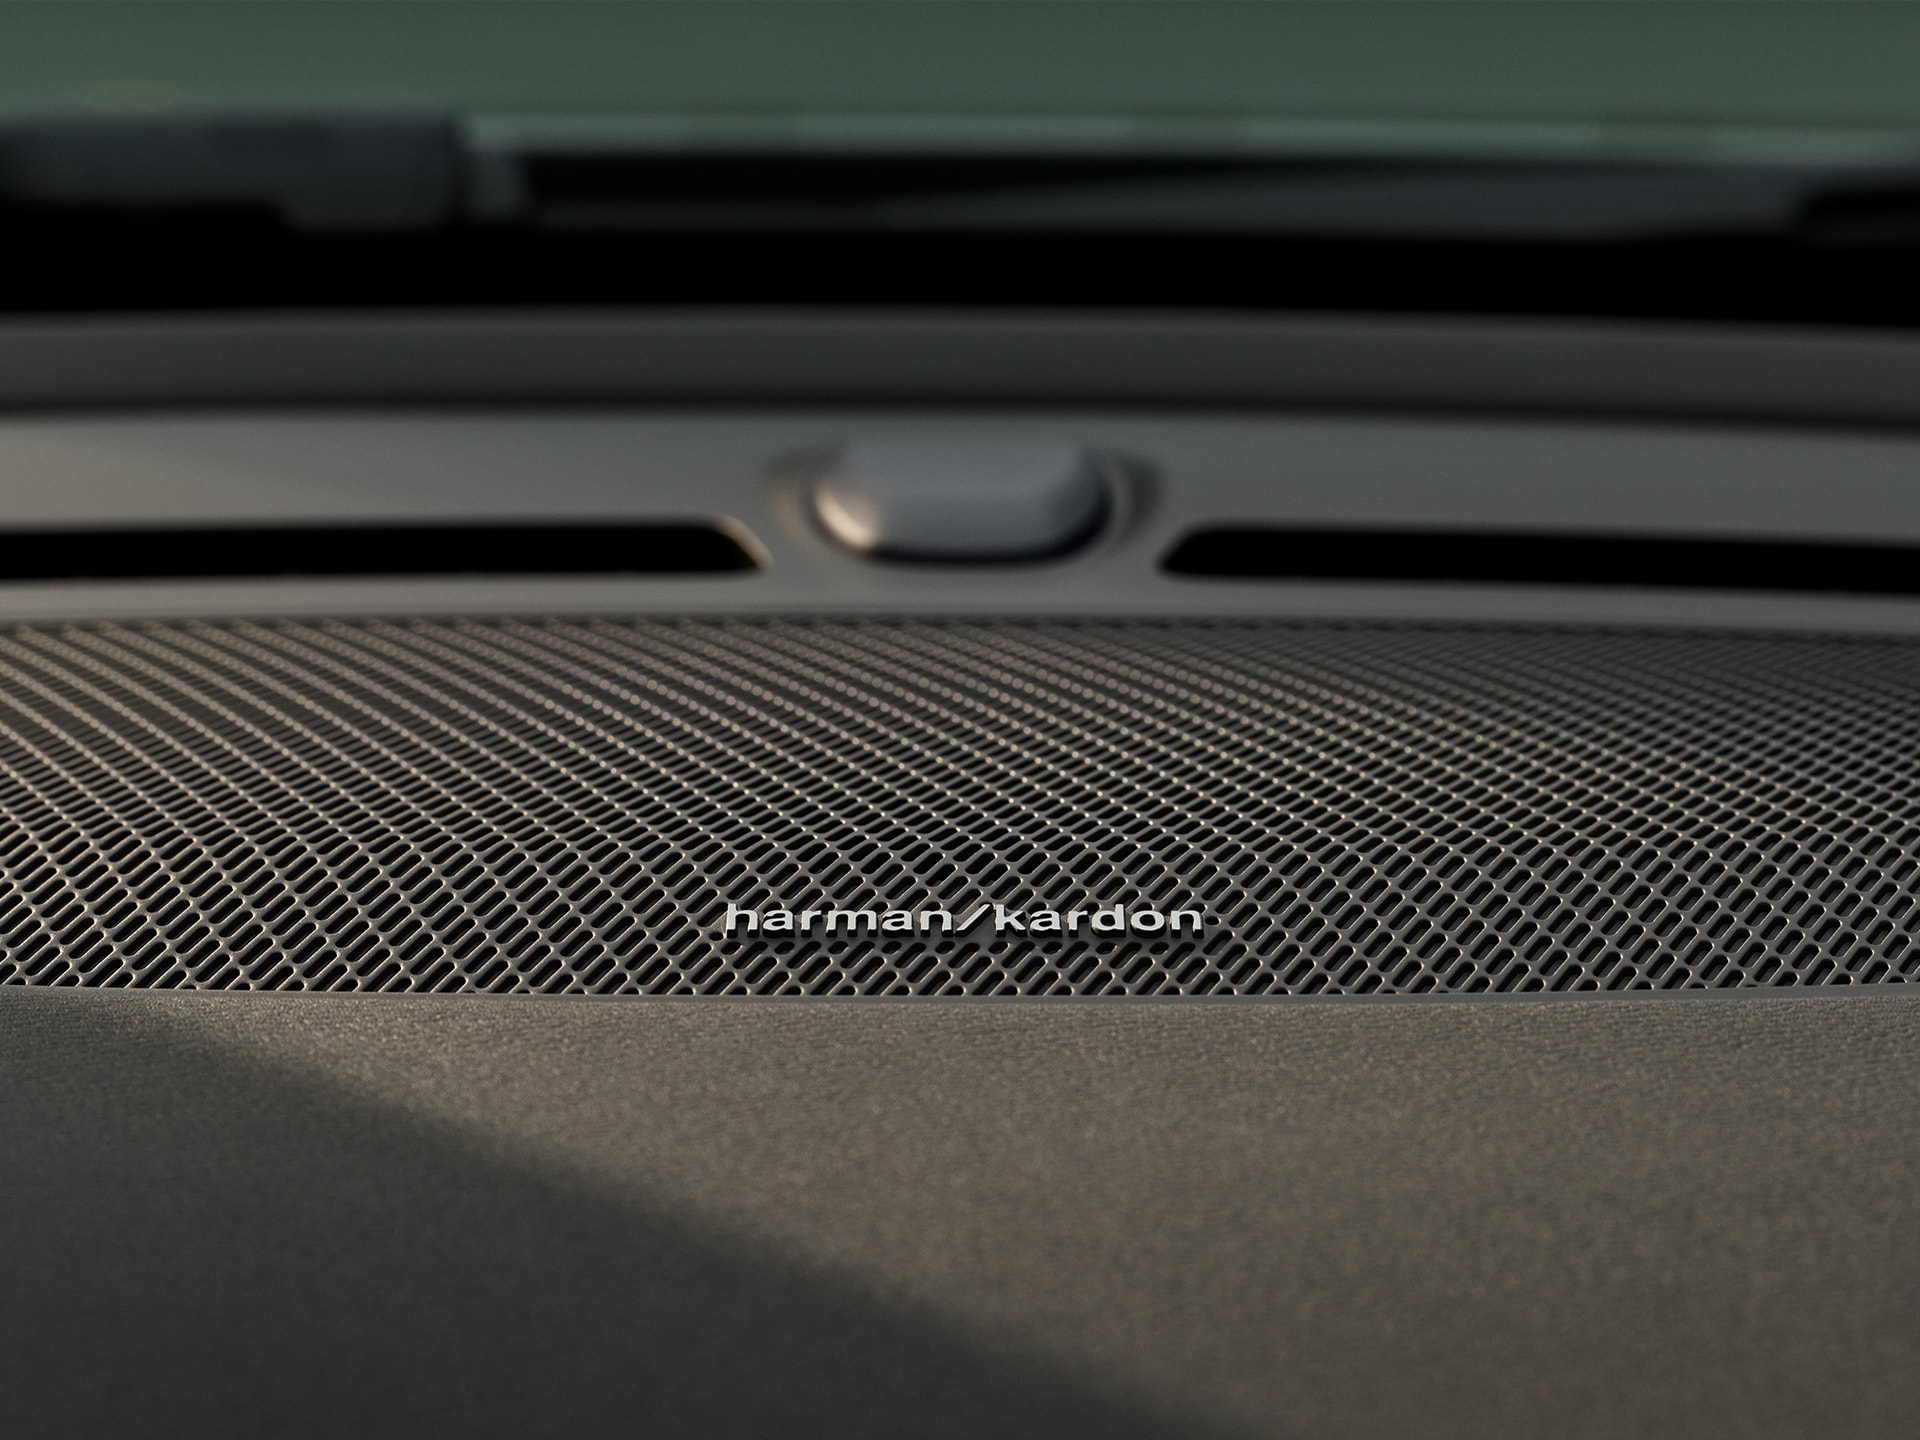 Detailafbeelding van Harman Kardon luidspreker in een Volvo XC40.